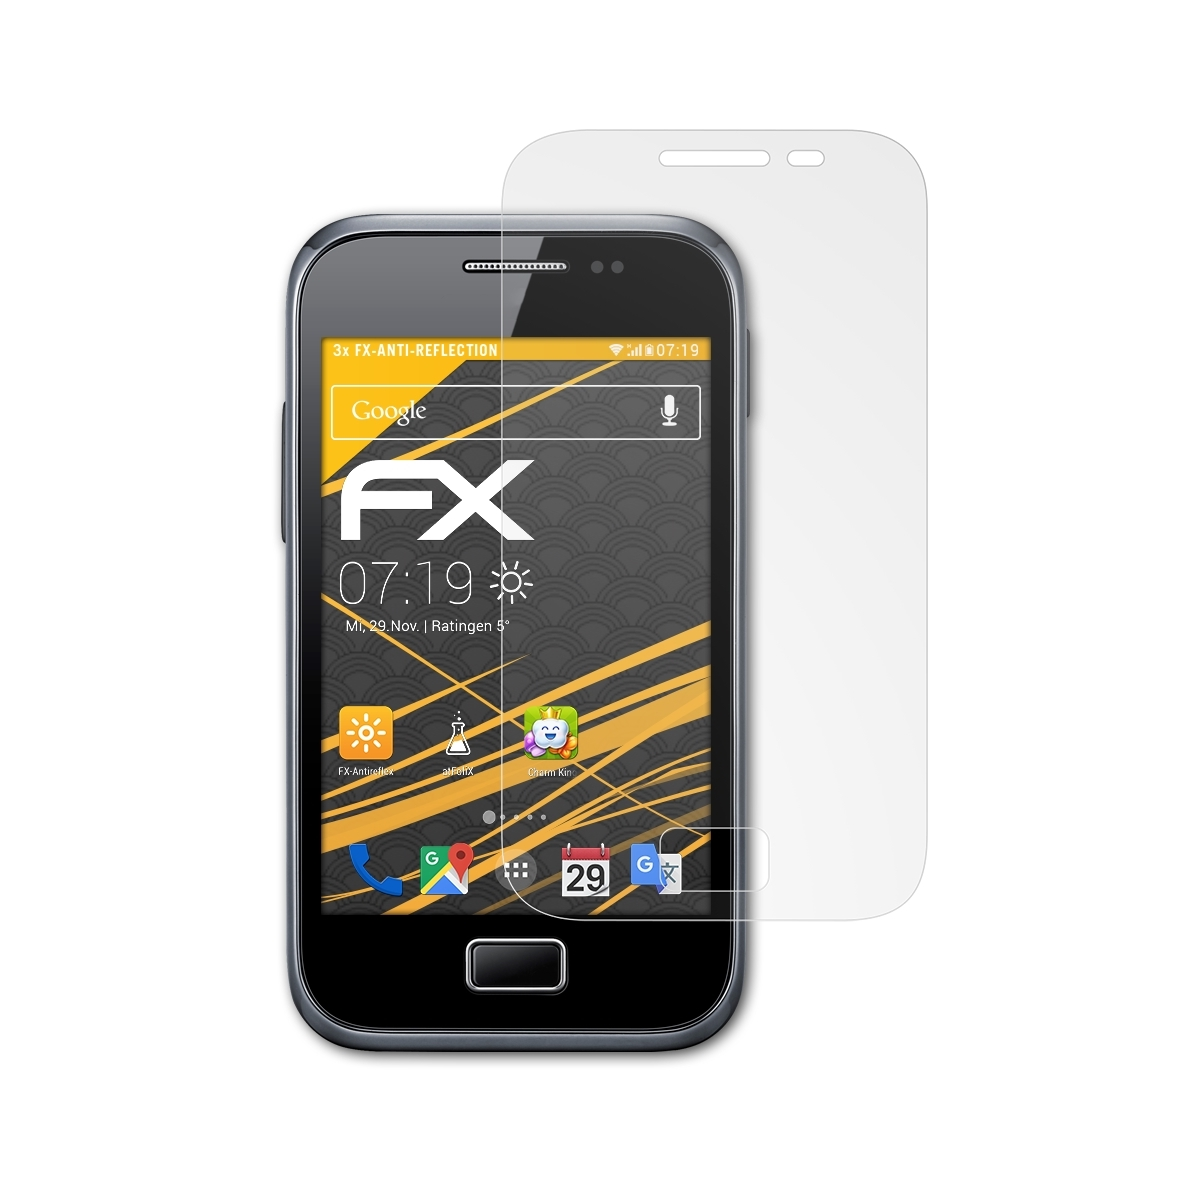 ATFOLIX Plus Galaxy Samsung 3x FX-Antireflex (GT-S7500)) Displayschutz(für Ace